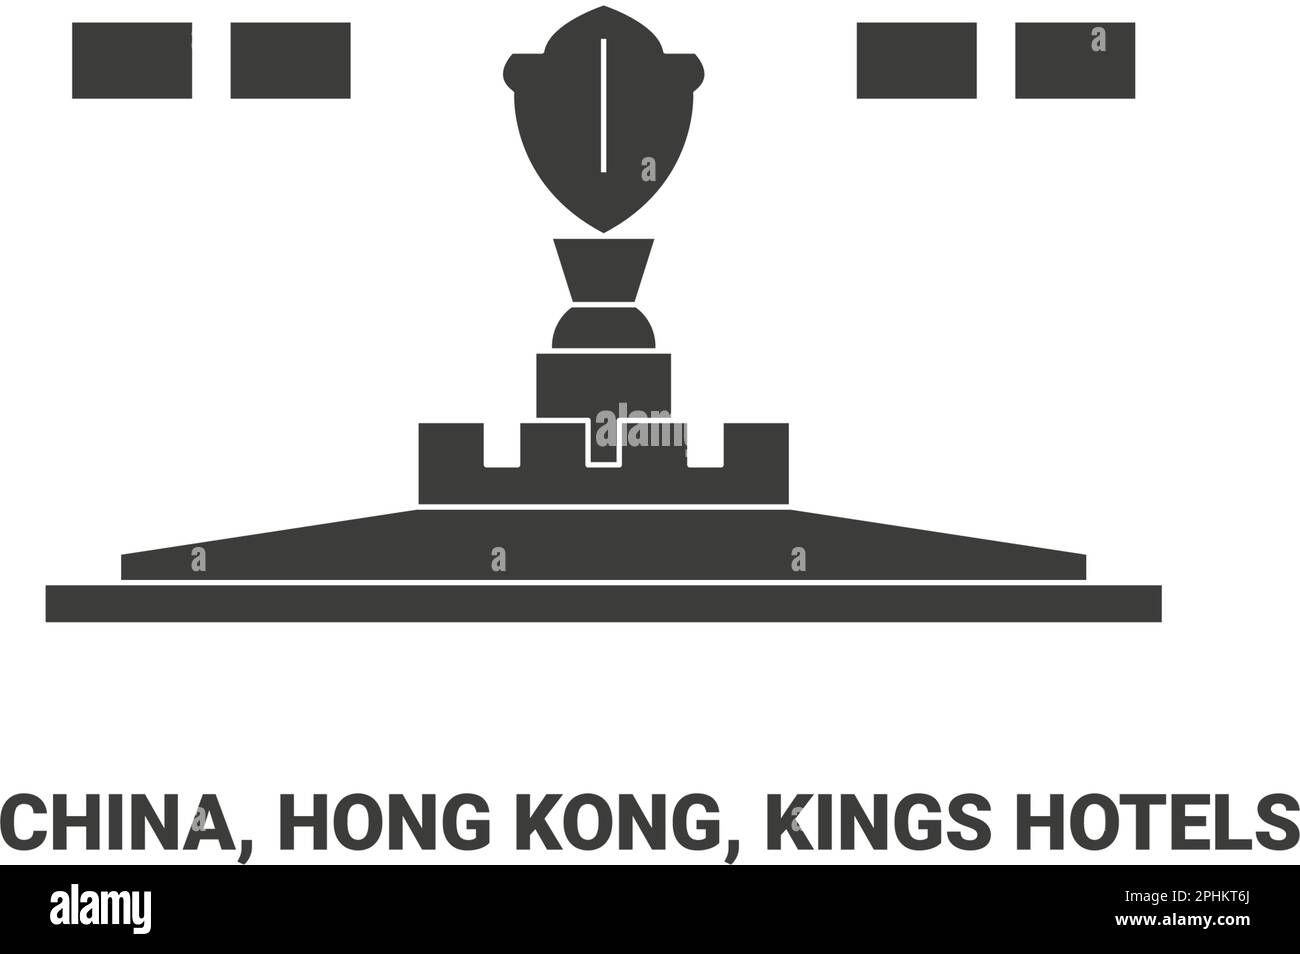 China, Hong Kong, Kings Hotels travel landmark vector illustration Stock Vector